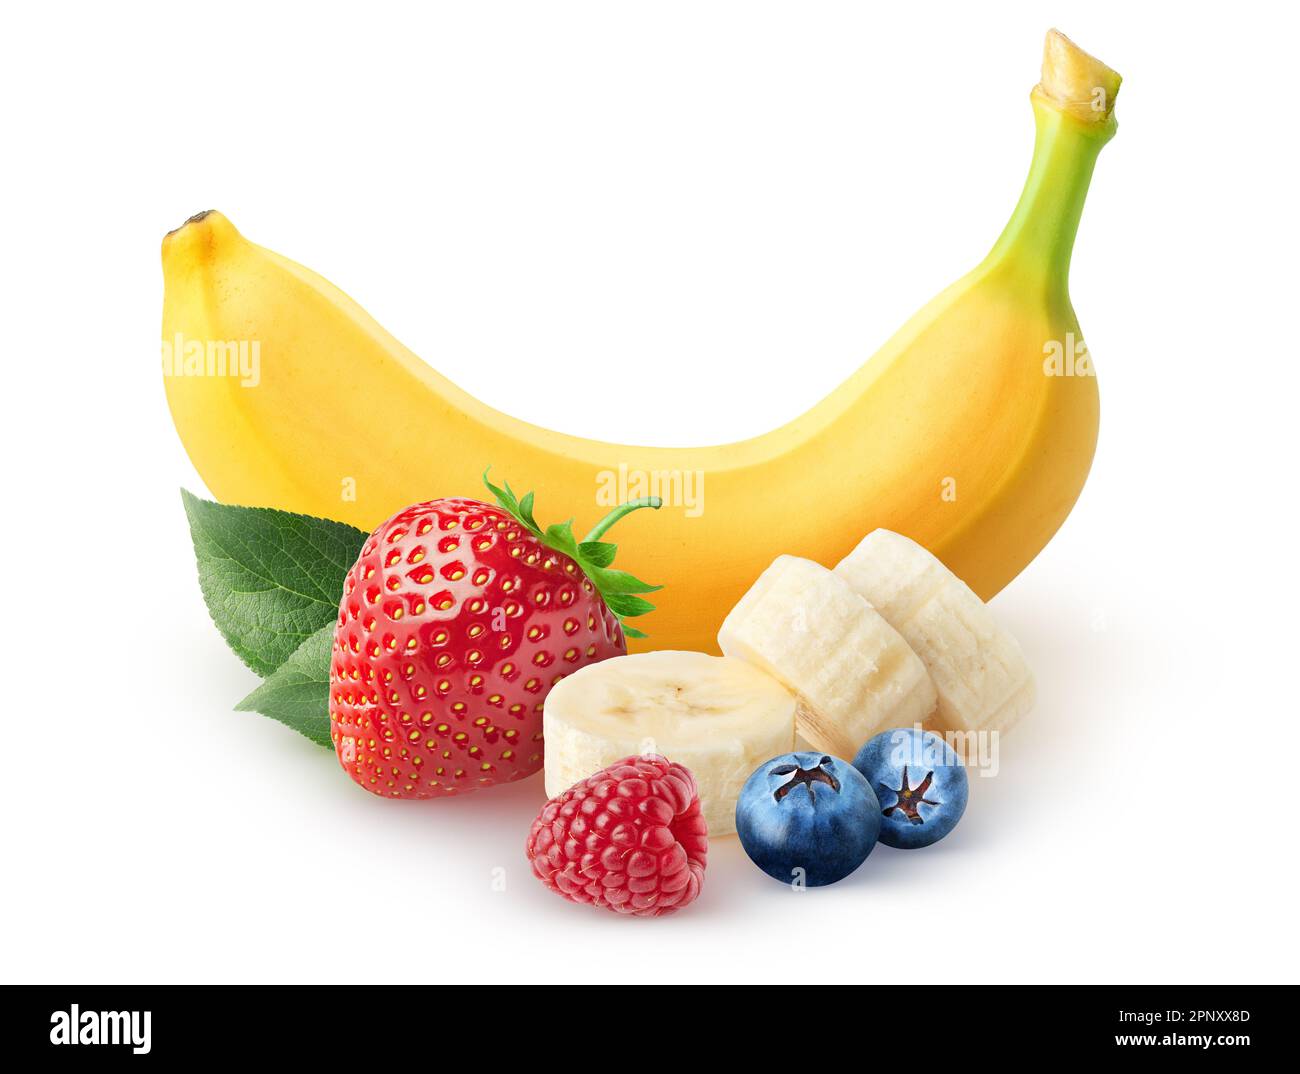 Mazzo di frutta. Frutta per frullato. Banana, fragola, mirtillo, lampone isolato su sfondo bianco con percorso di ritaglio Foto Stock